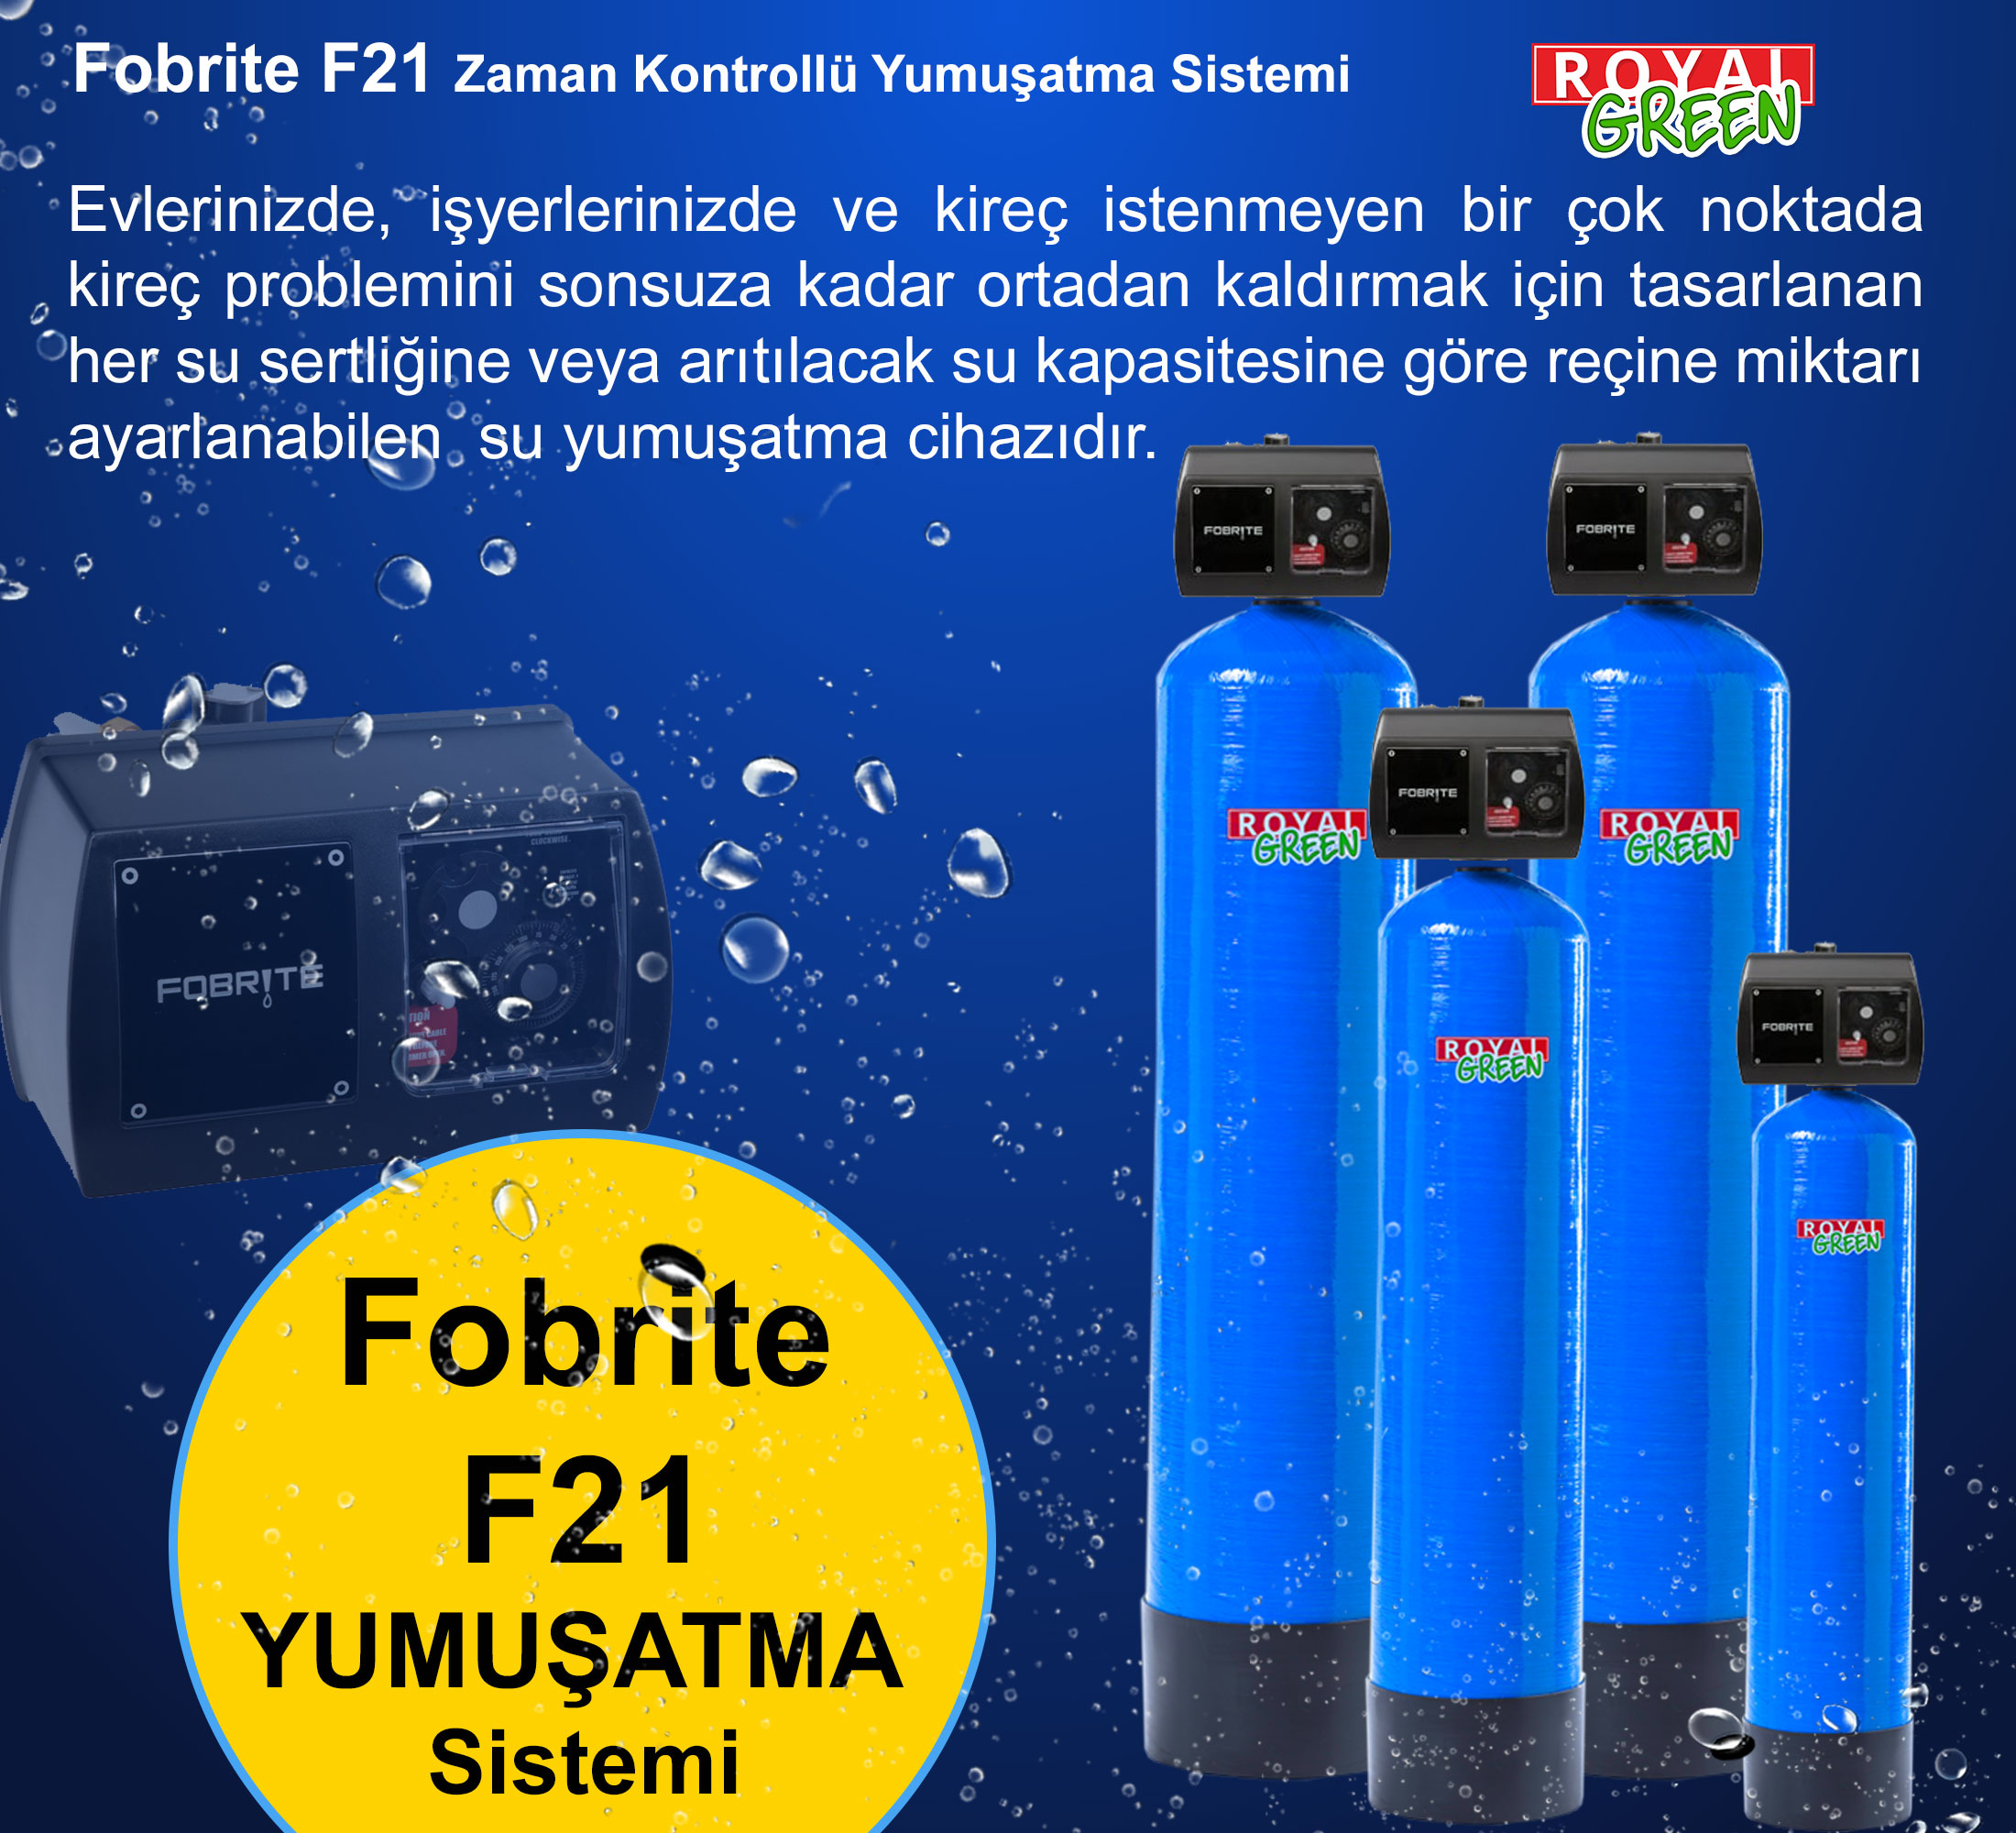 fobrite F21 yumusatma sistemi banner